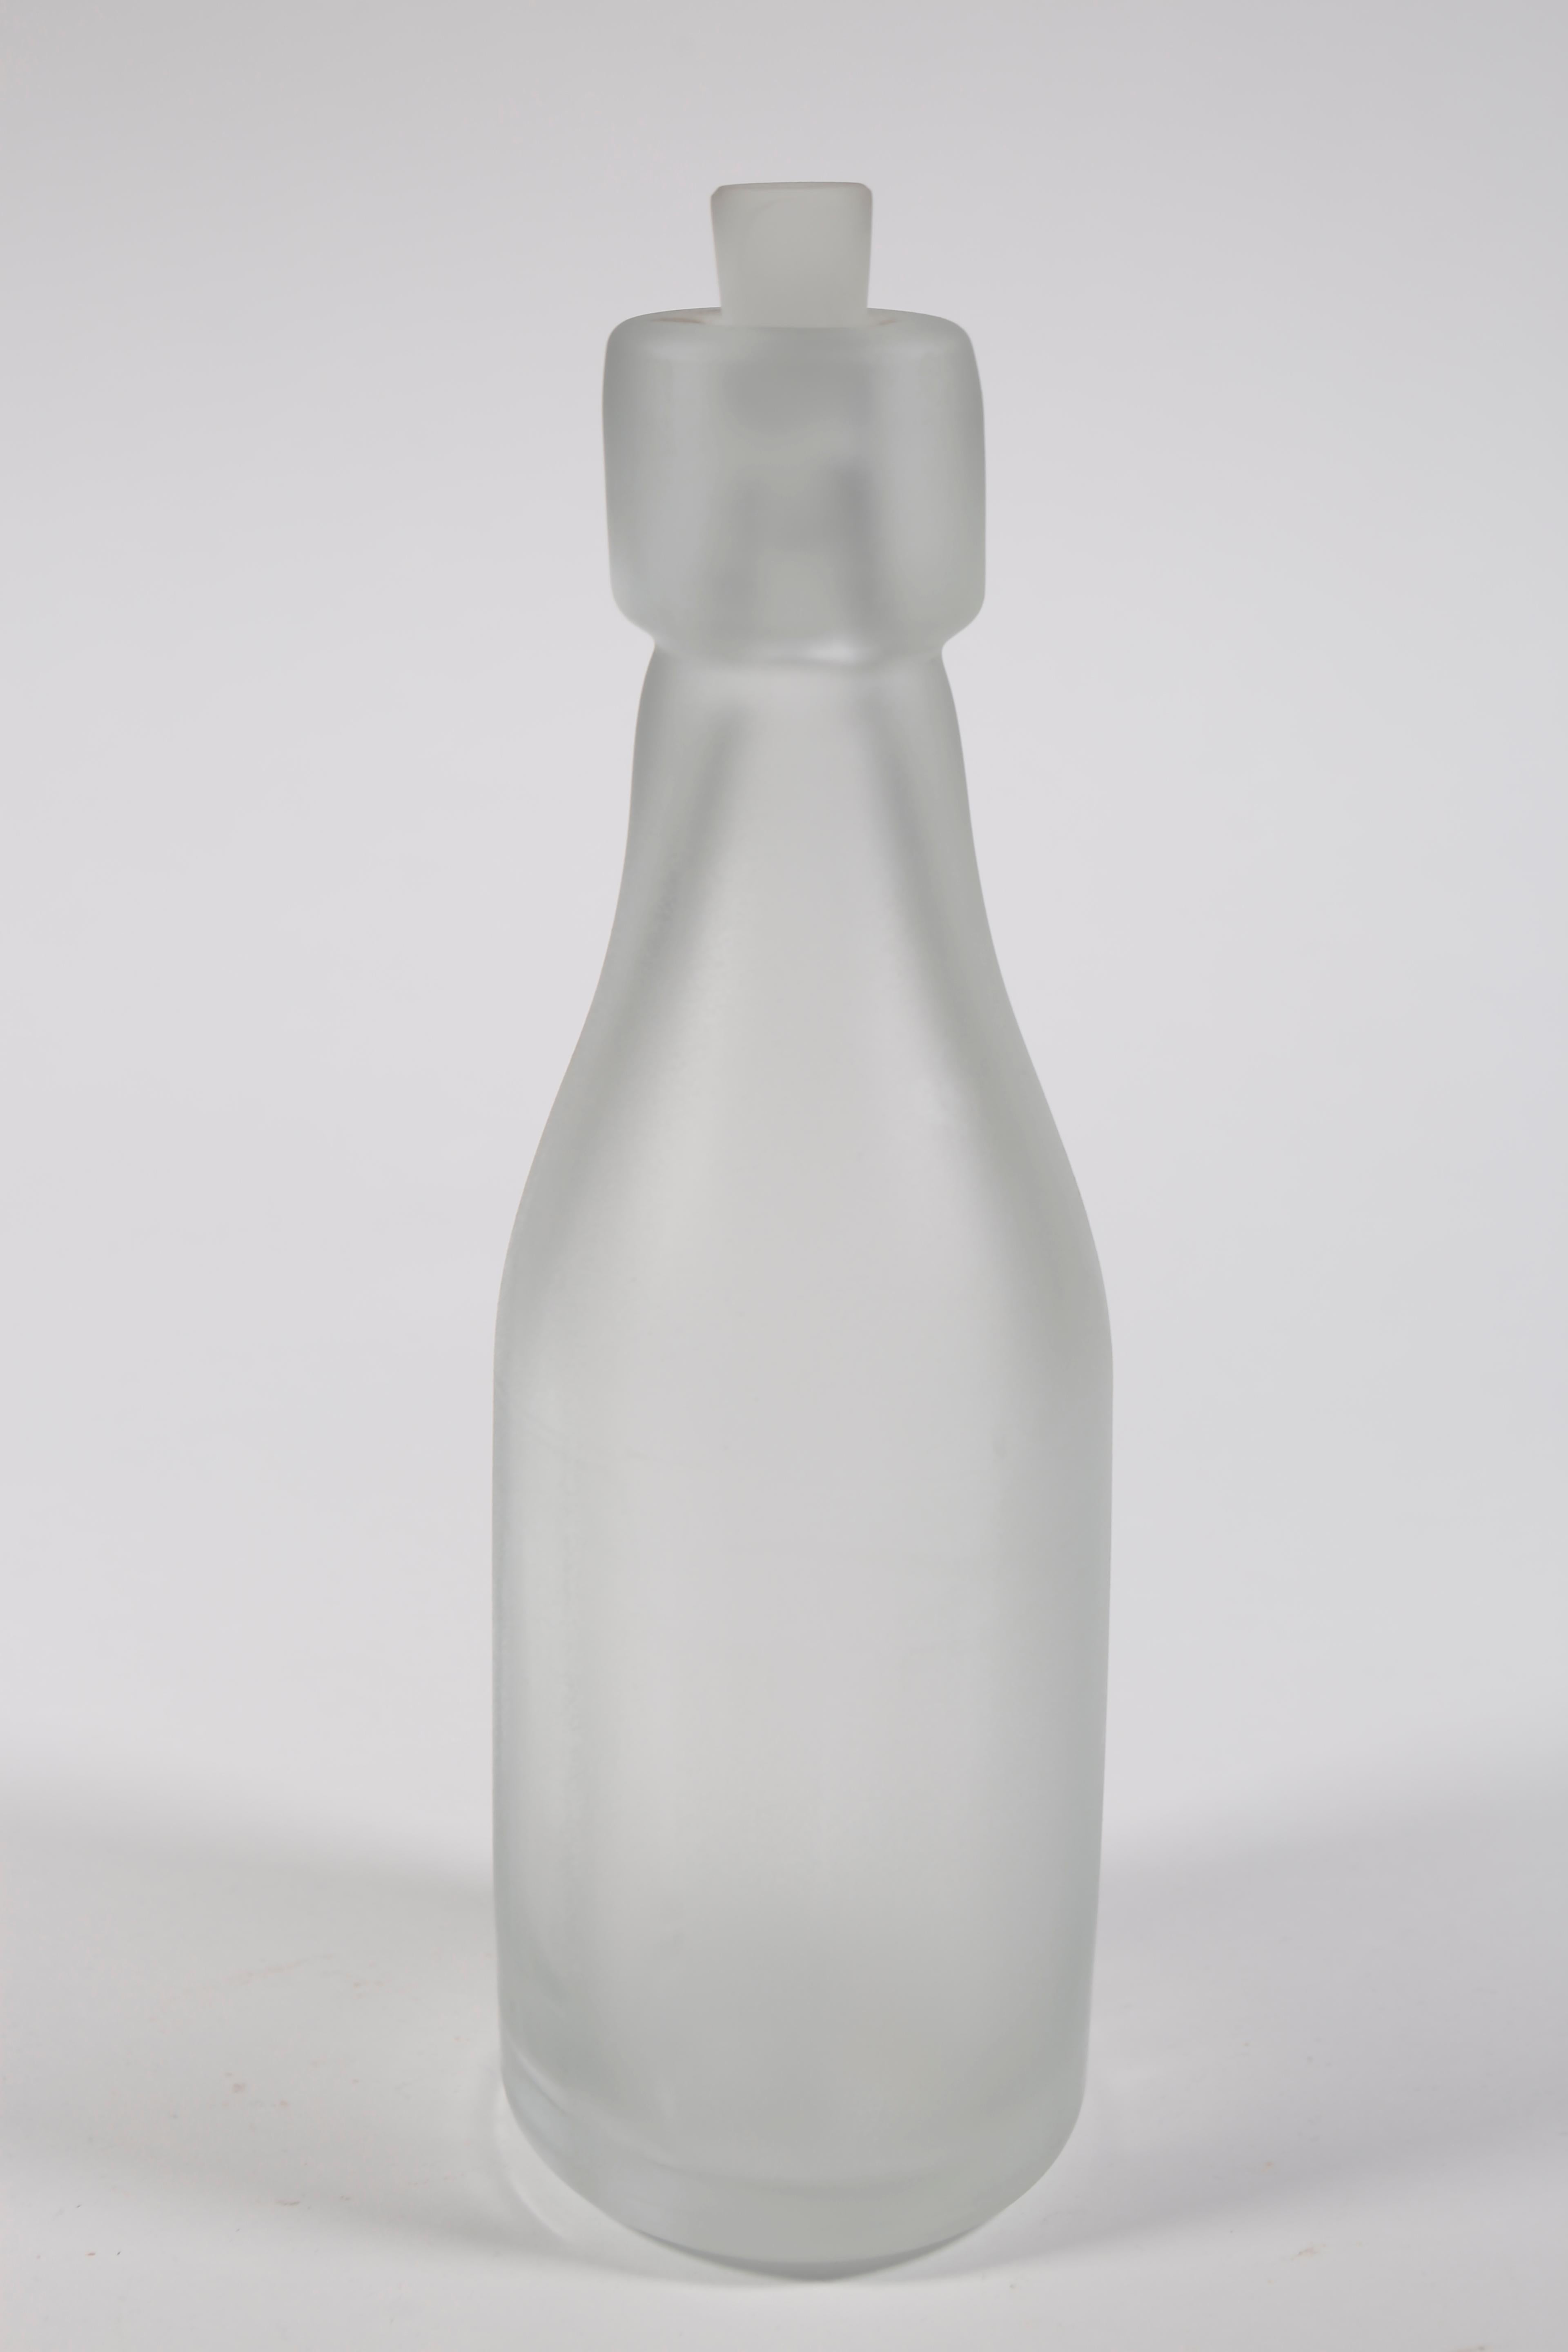 Whole Nother Melk Bottles/Vases: Etched Blown Glass, Chicago, Jordan Mozer, 2013 For Sale 9